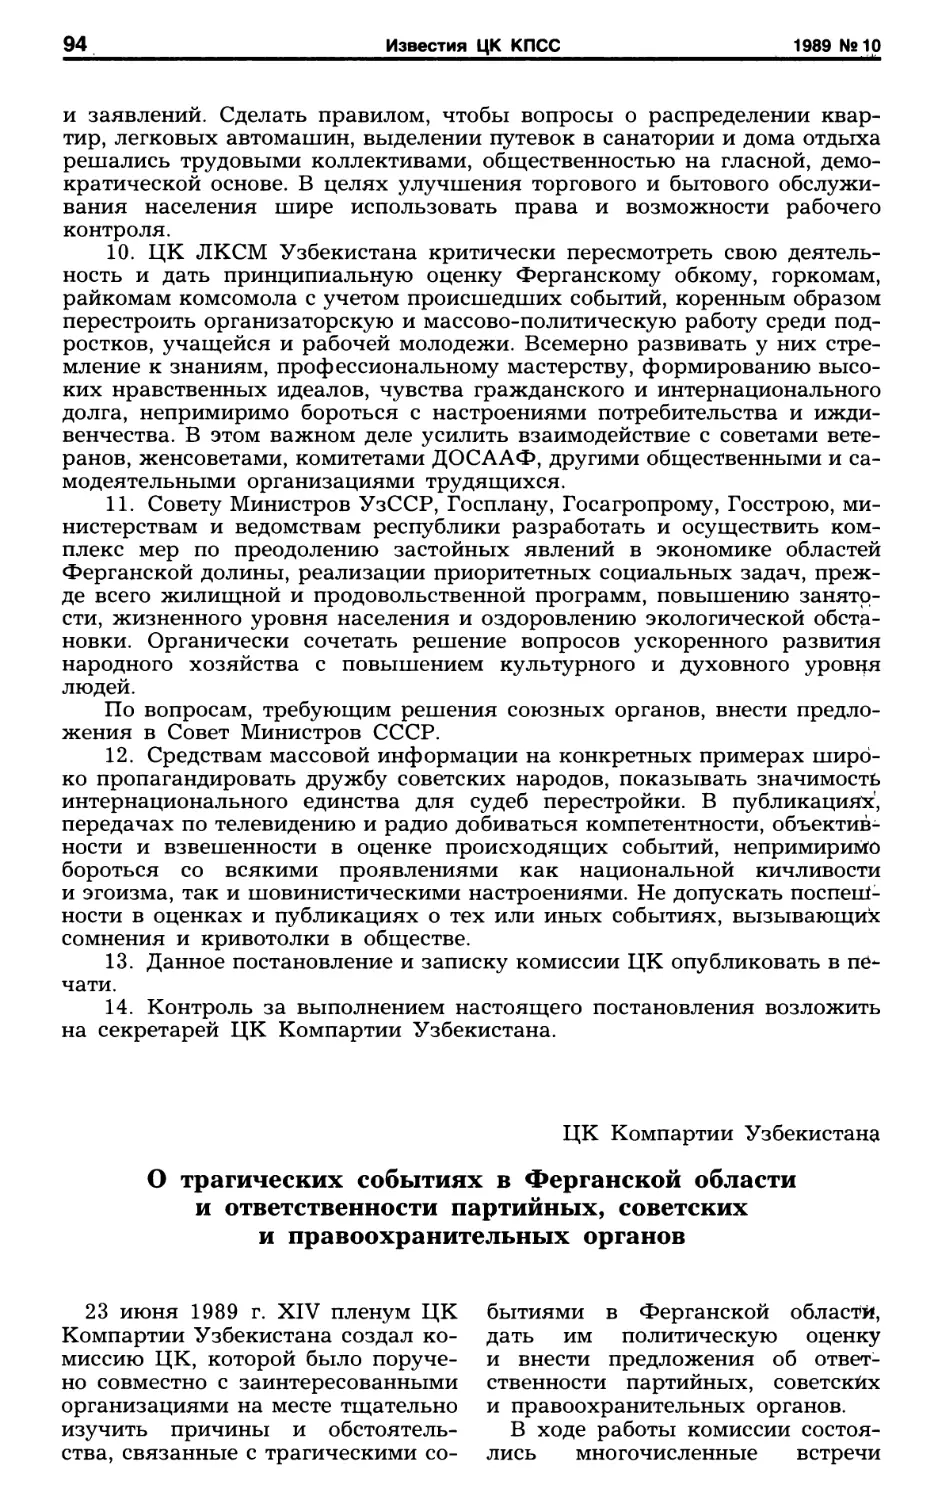 Записка комисссии ЦК Компартии Узбекистана